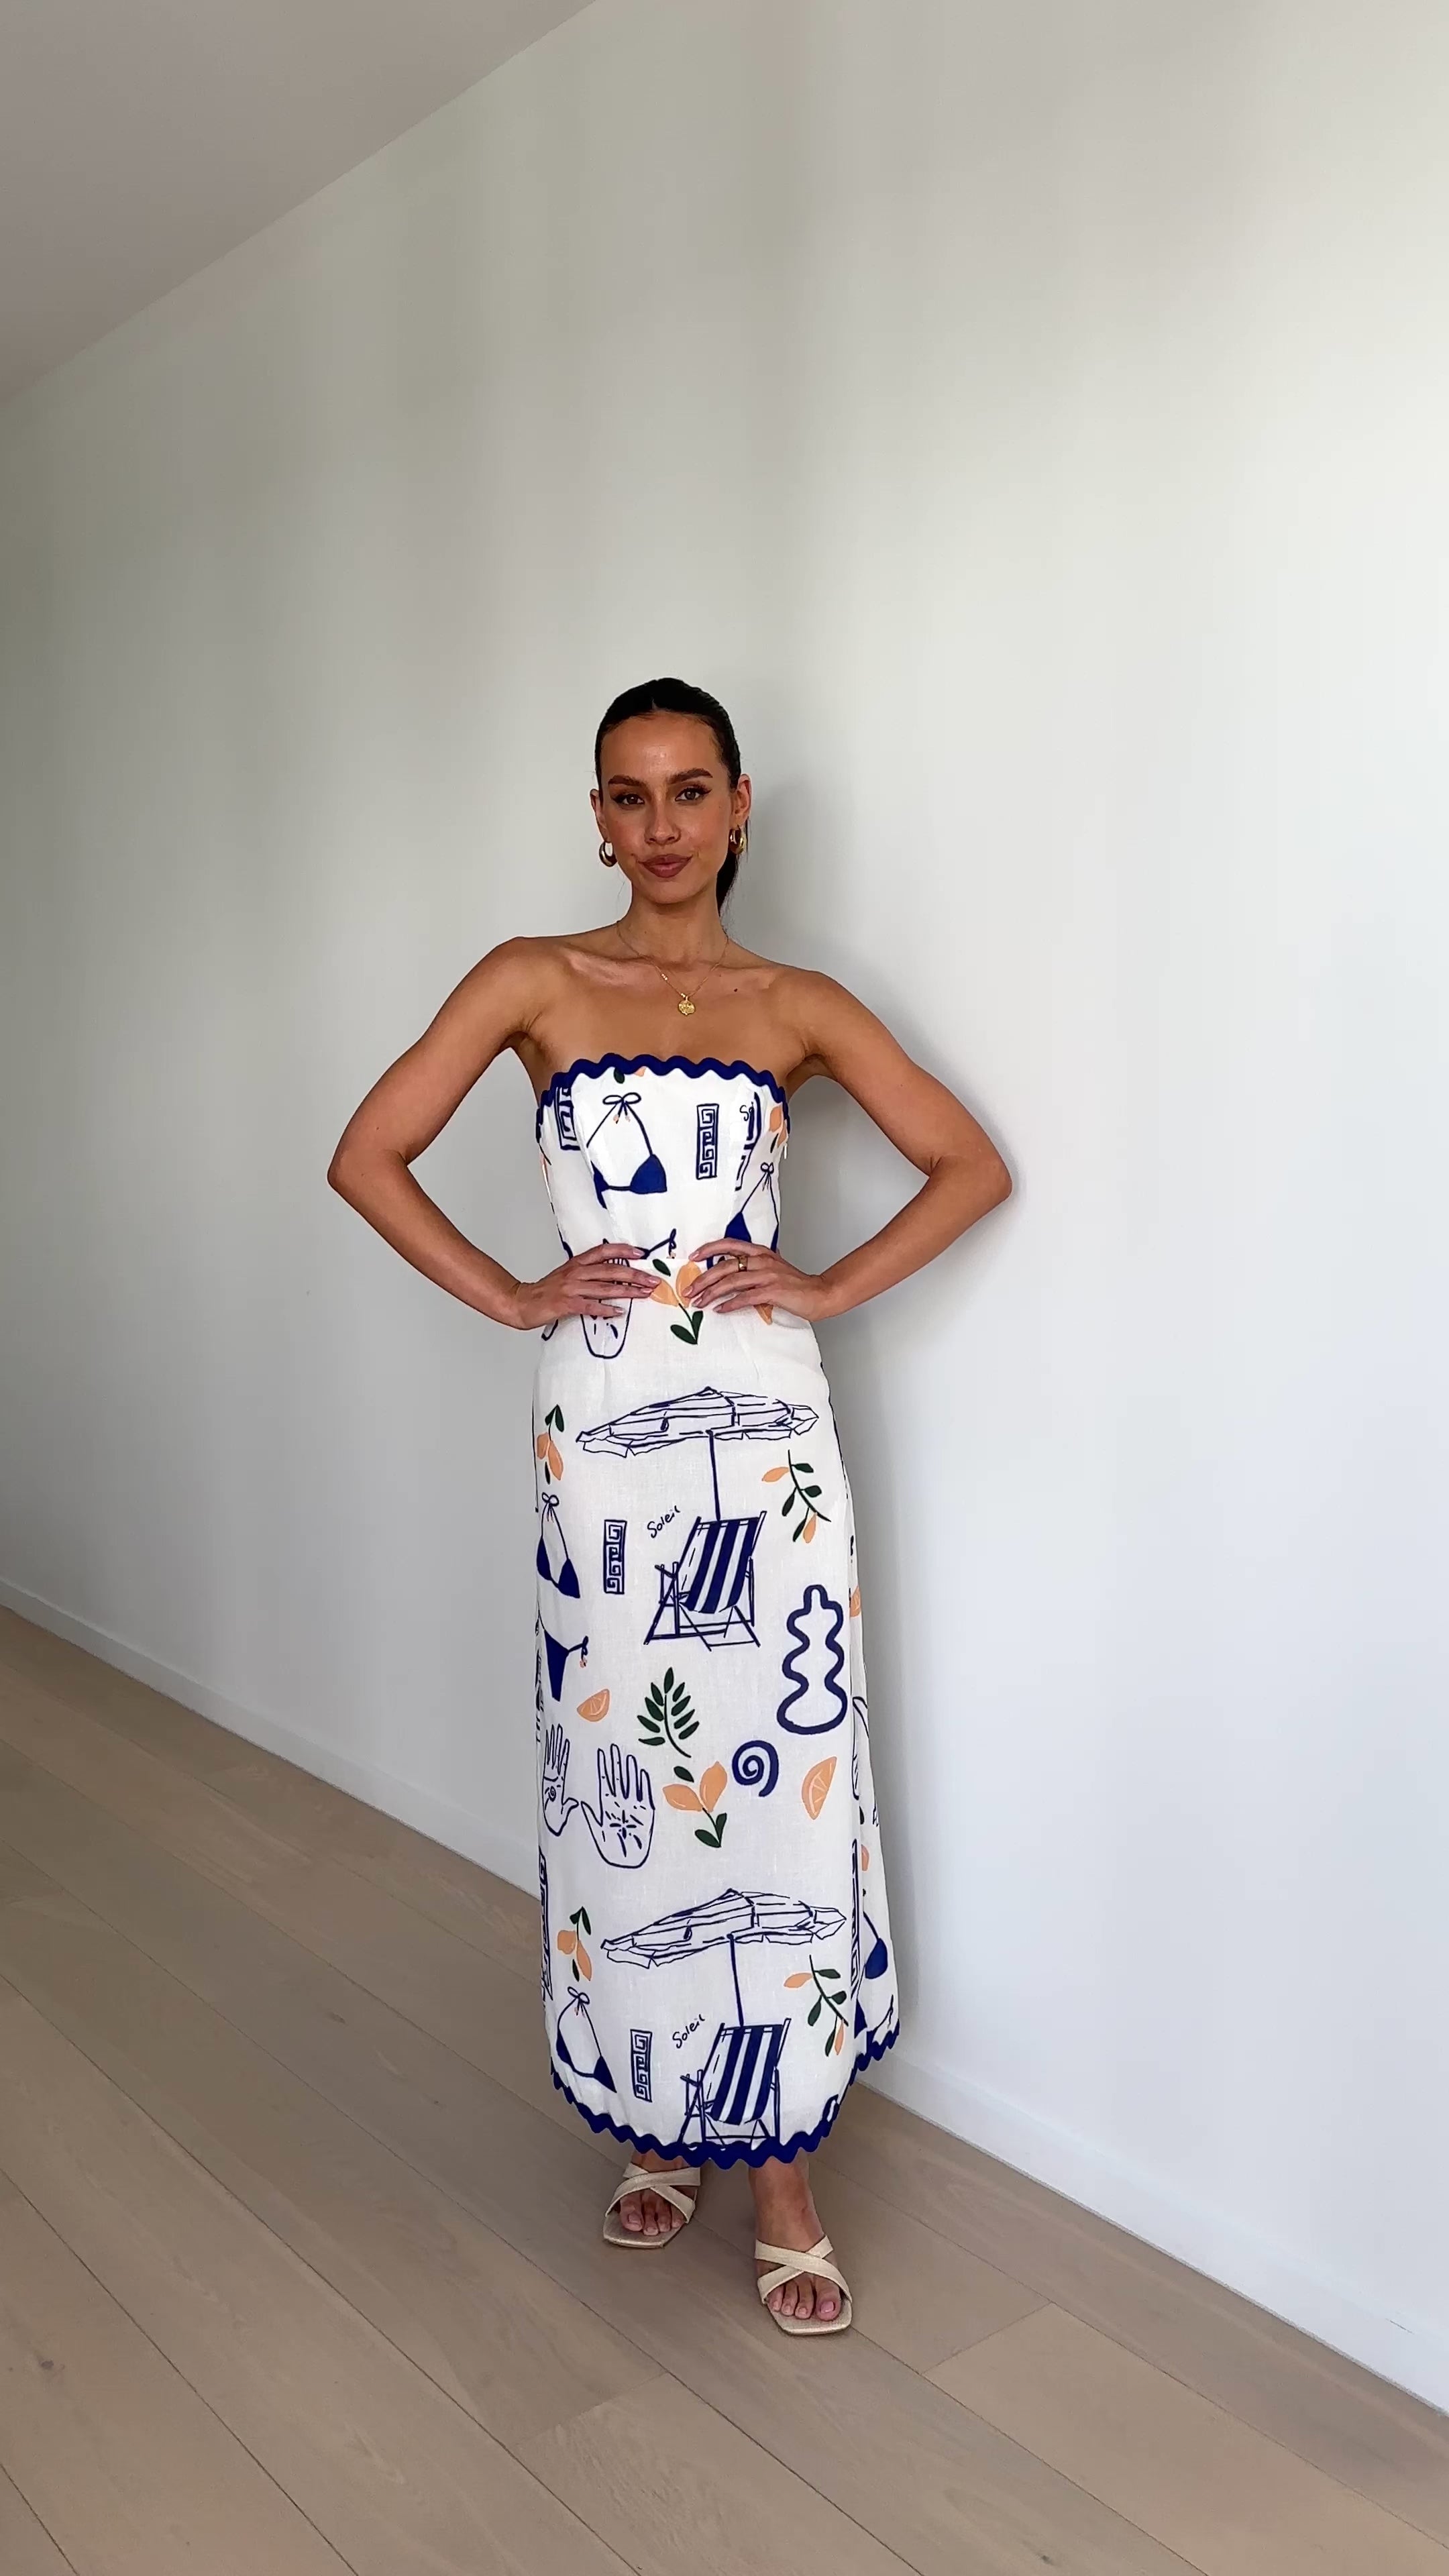 Rafa Maxi Dress - White / Blue Print